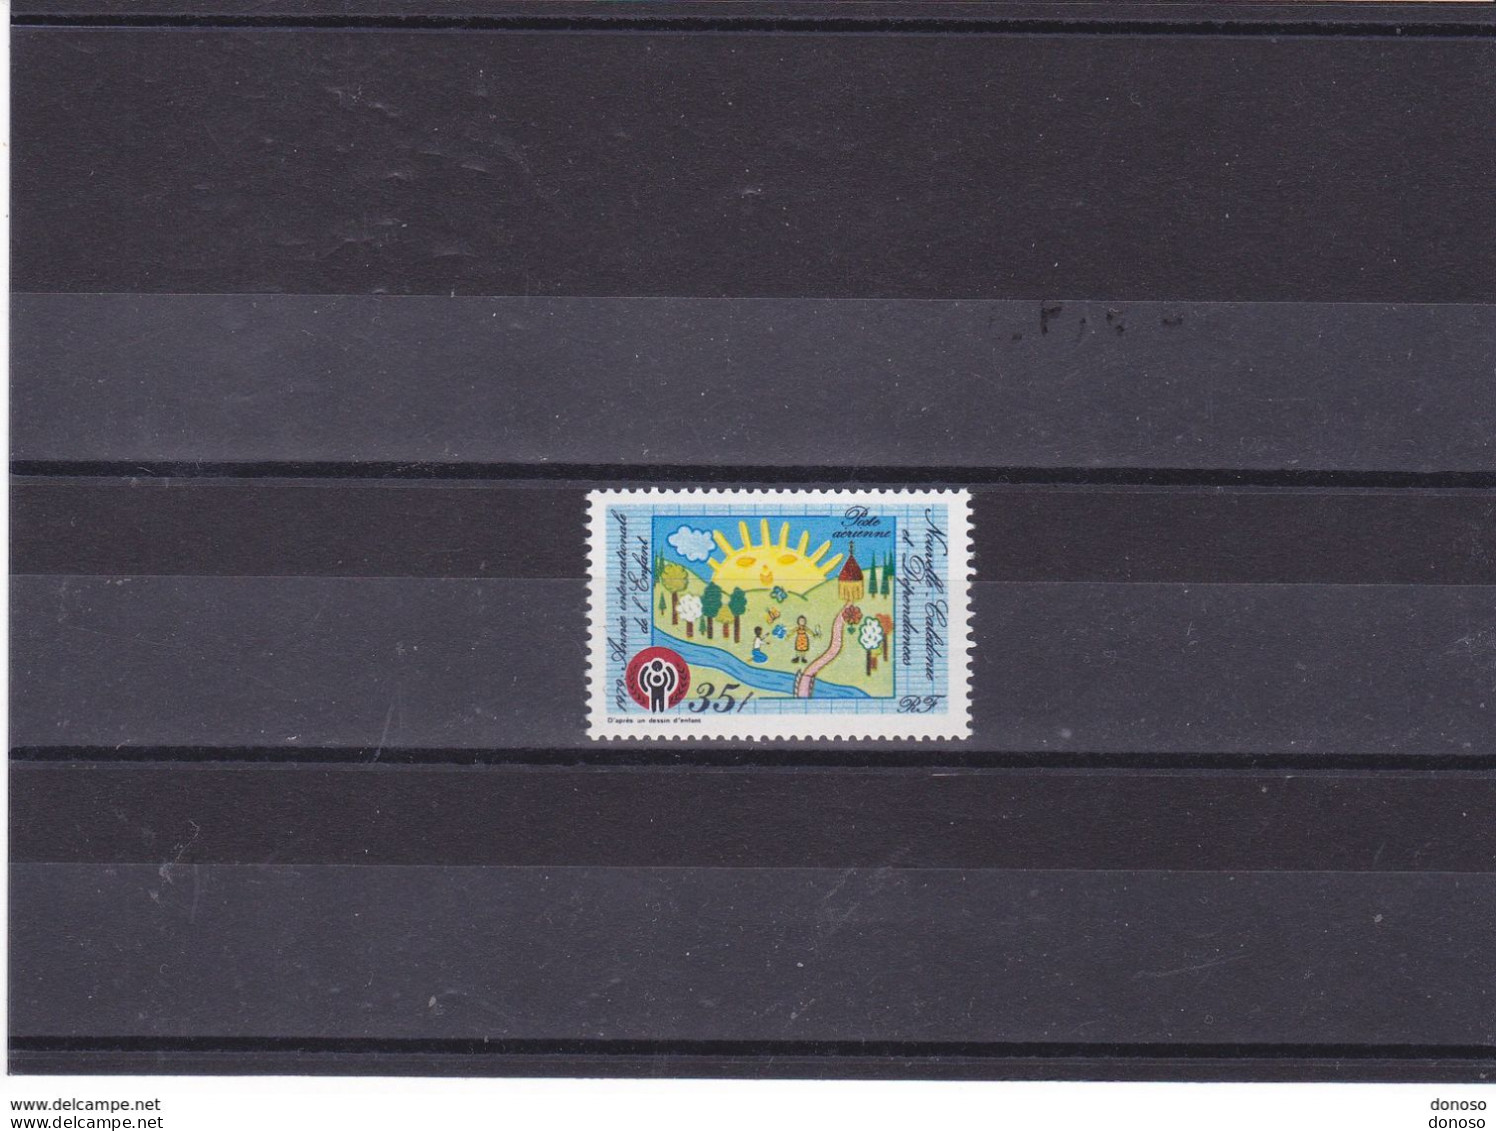 NOUVELLE CALEDONIE 1979 Année Internationale De L'enfant Yvert PA 194 NEUF** MNH Cote : 2,50 Euros - Unused Stamps